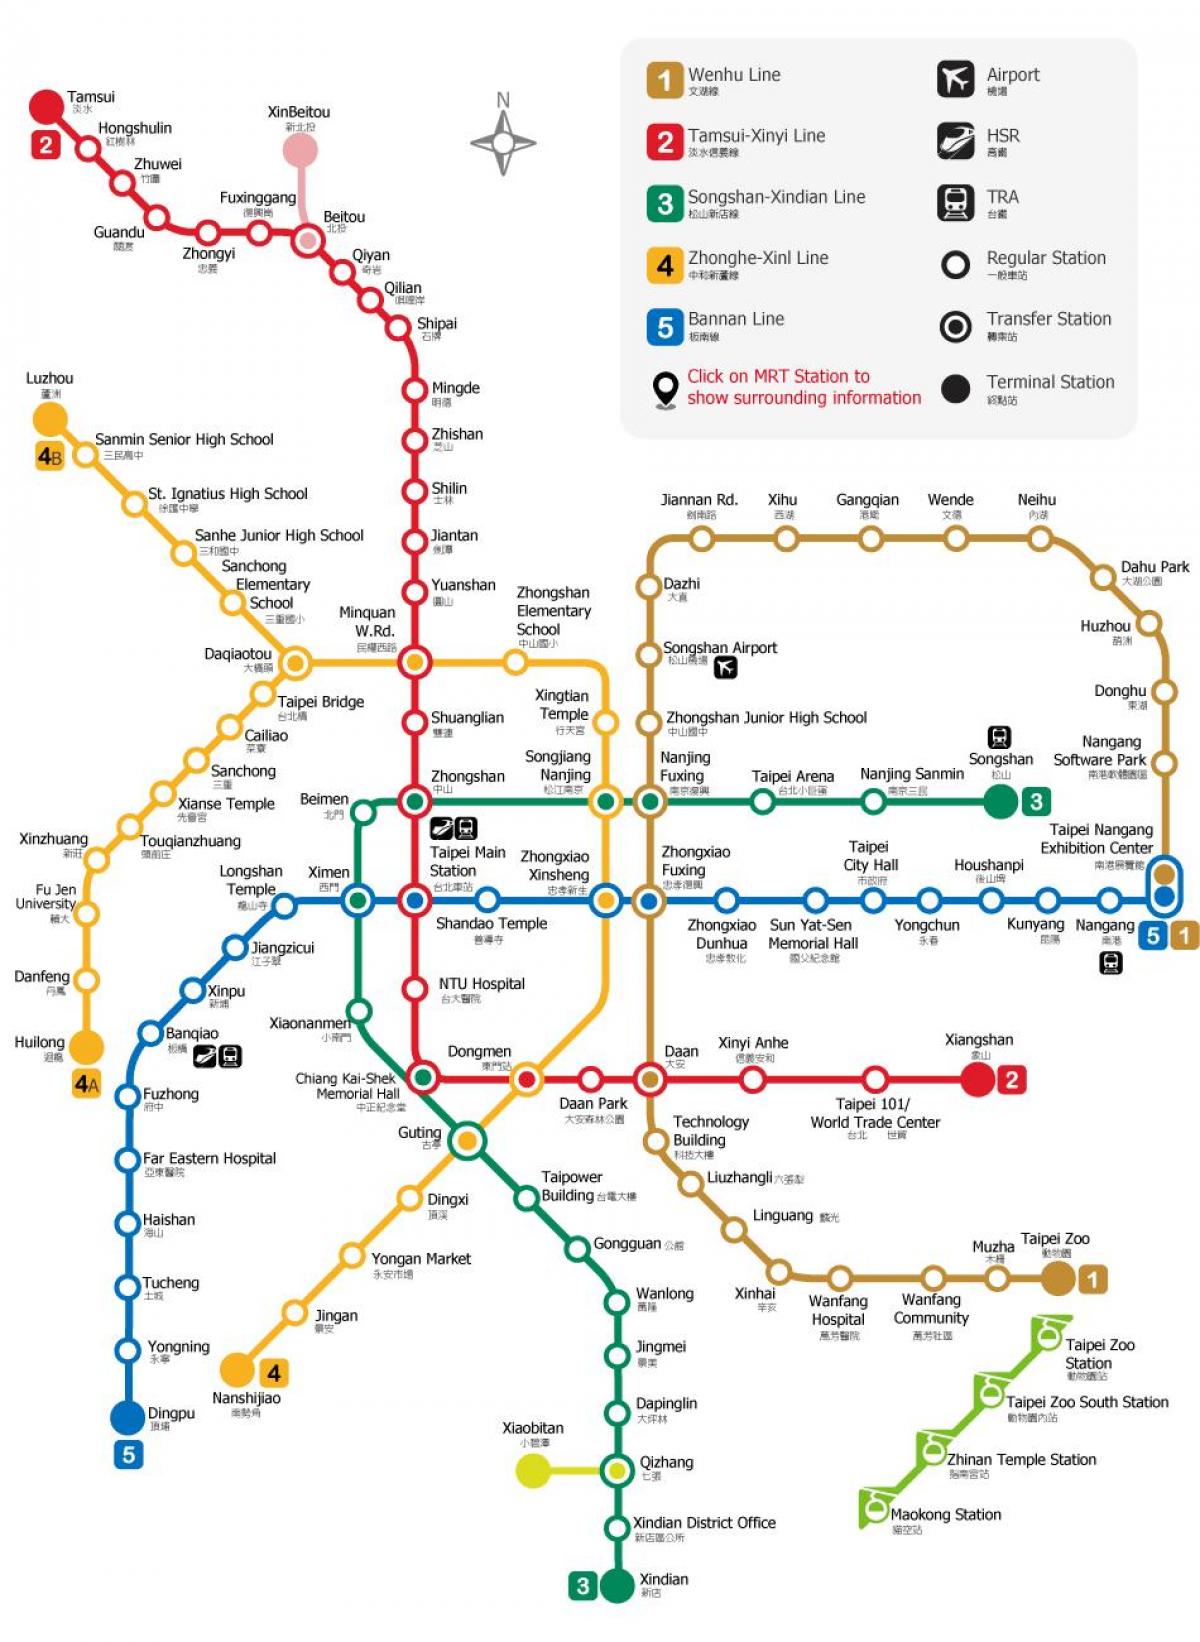 Taipei kituo cha metro ramani